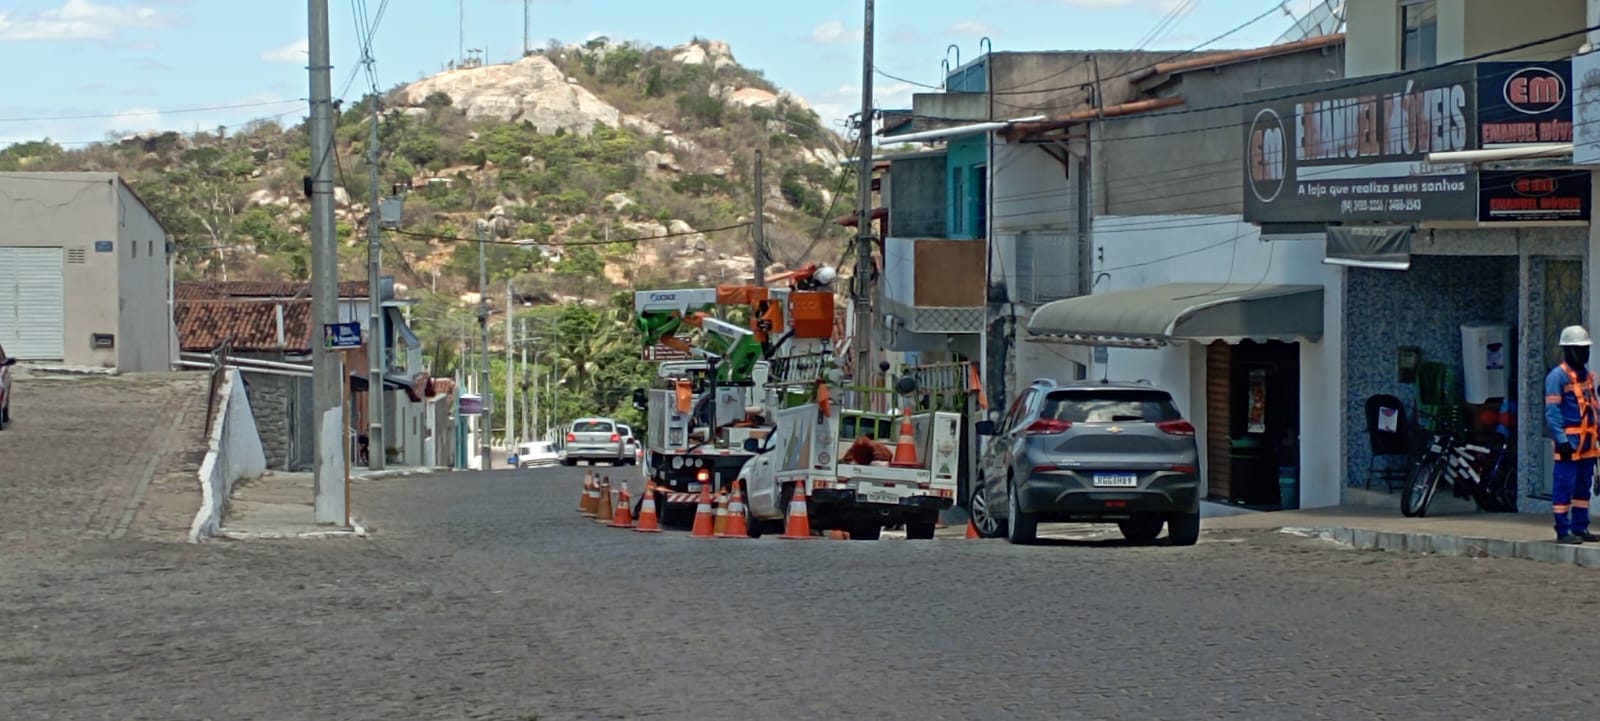 Cosern realiza retirada de cabos irregulares de telefonia em Cerro Corá/RN